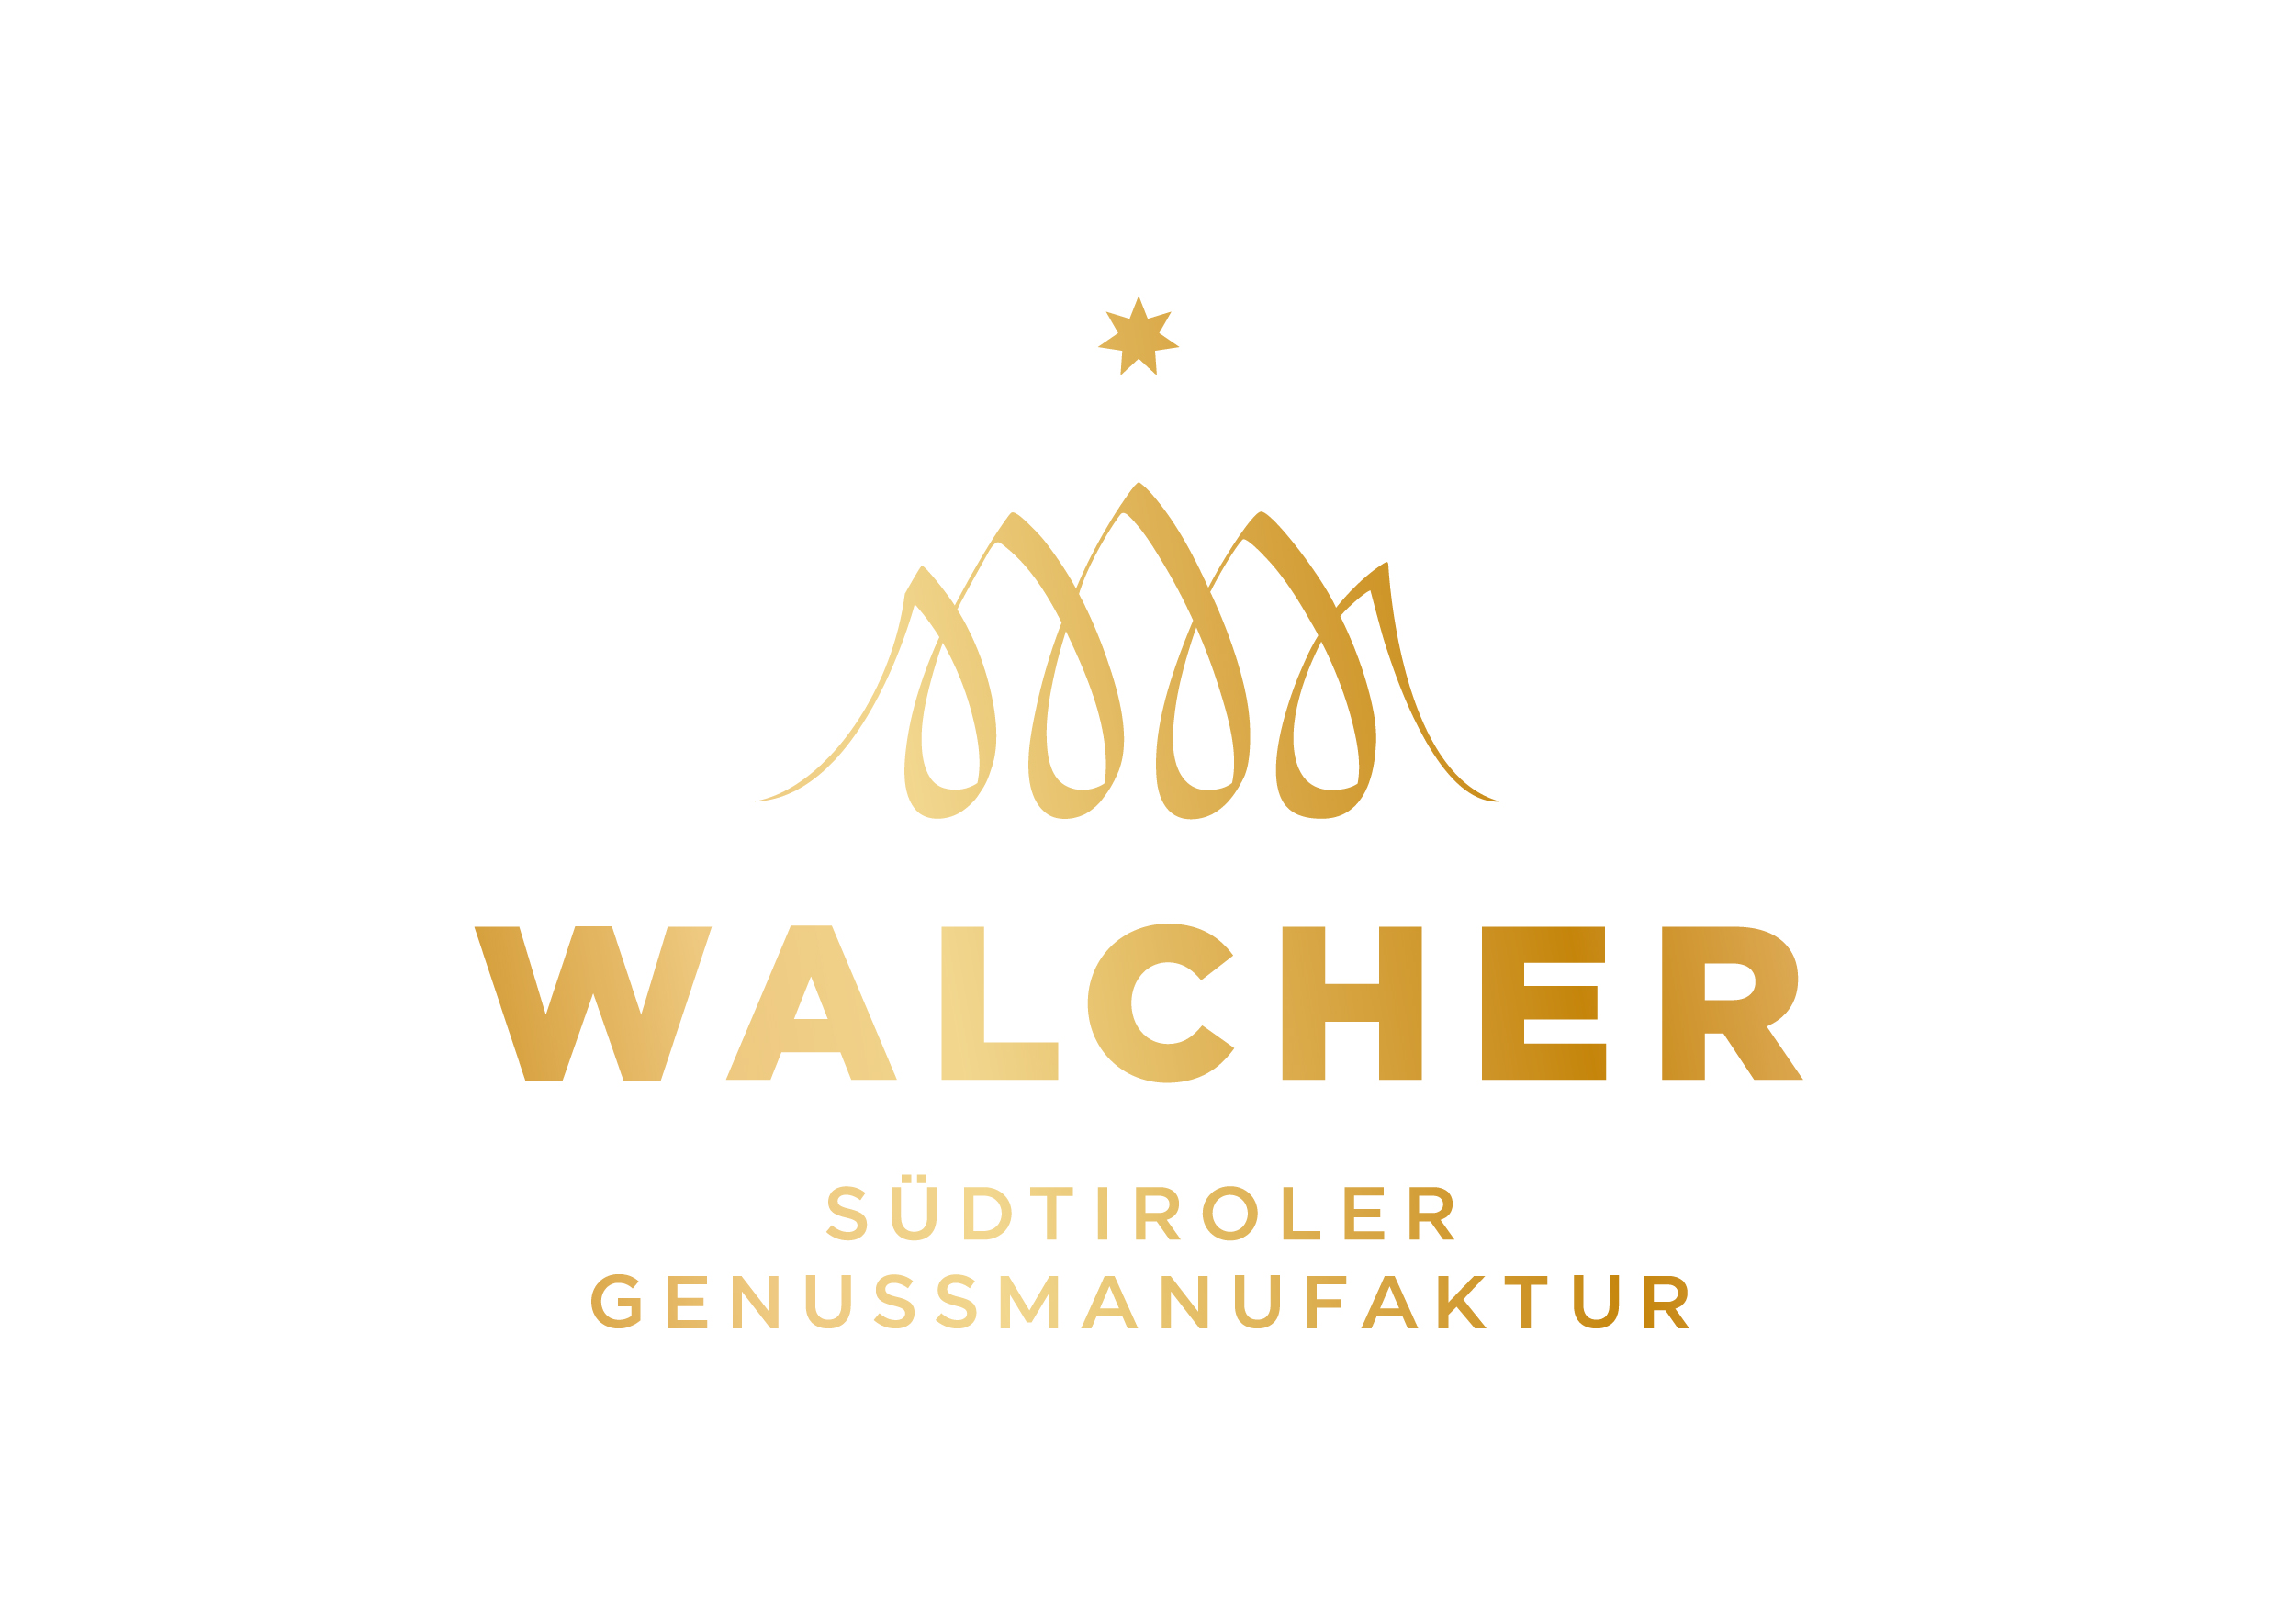 Genussmanufaktur Walcher